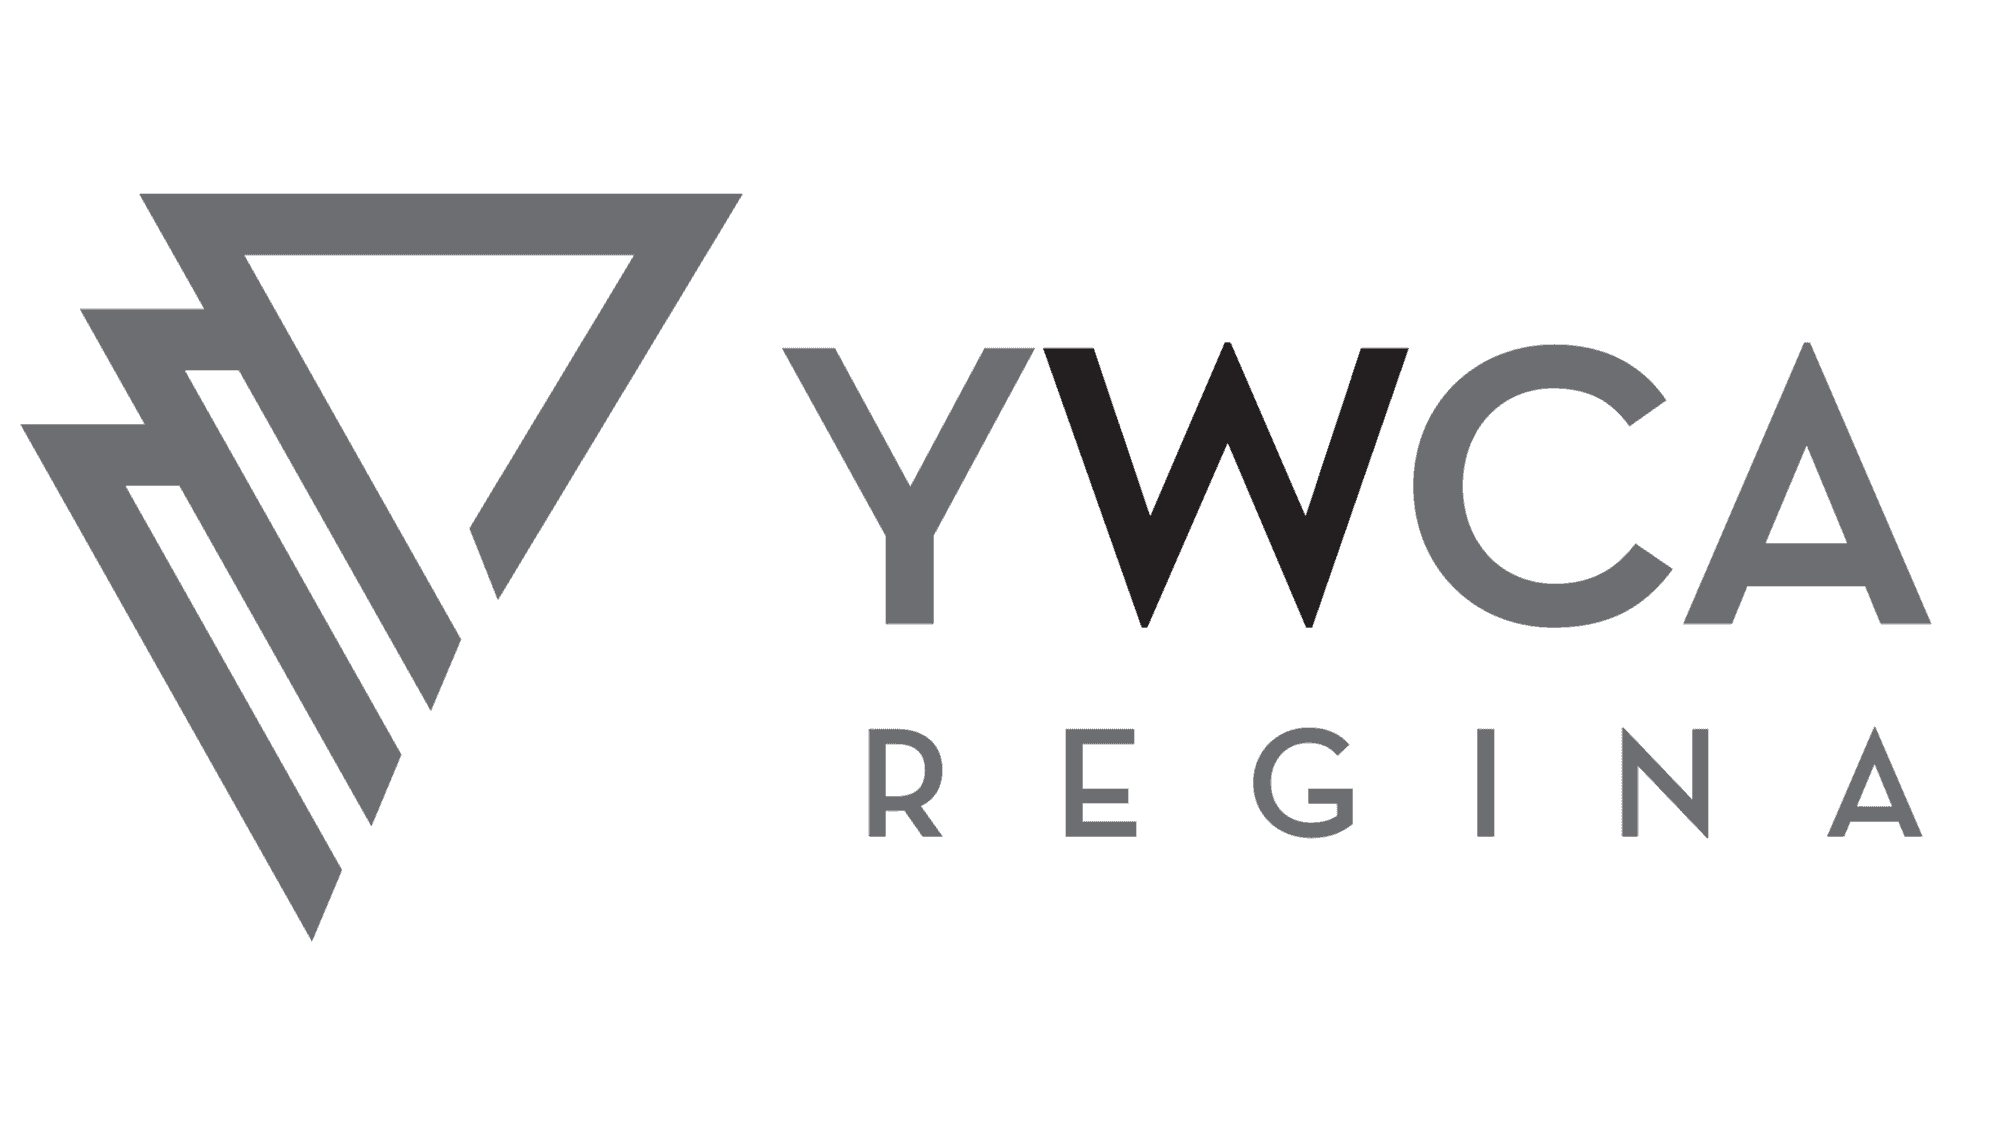 YWCA Regina's Logo